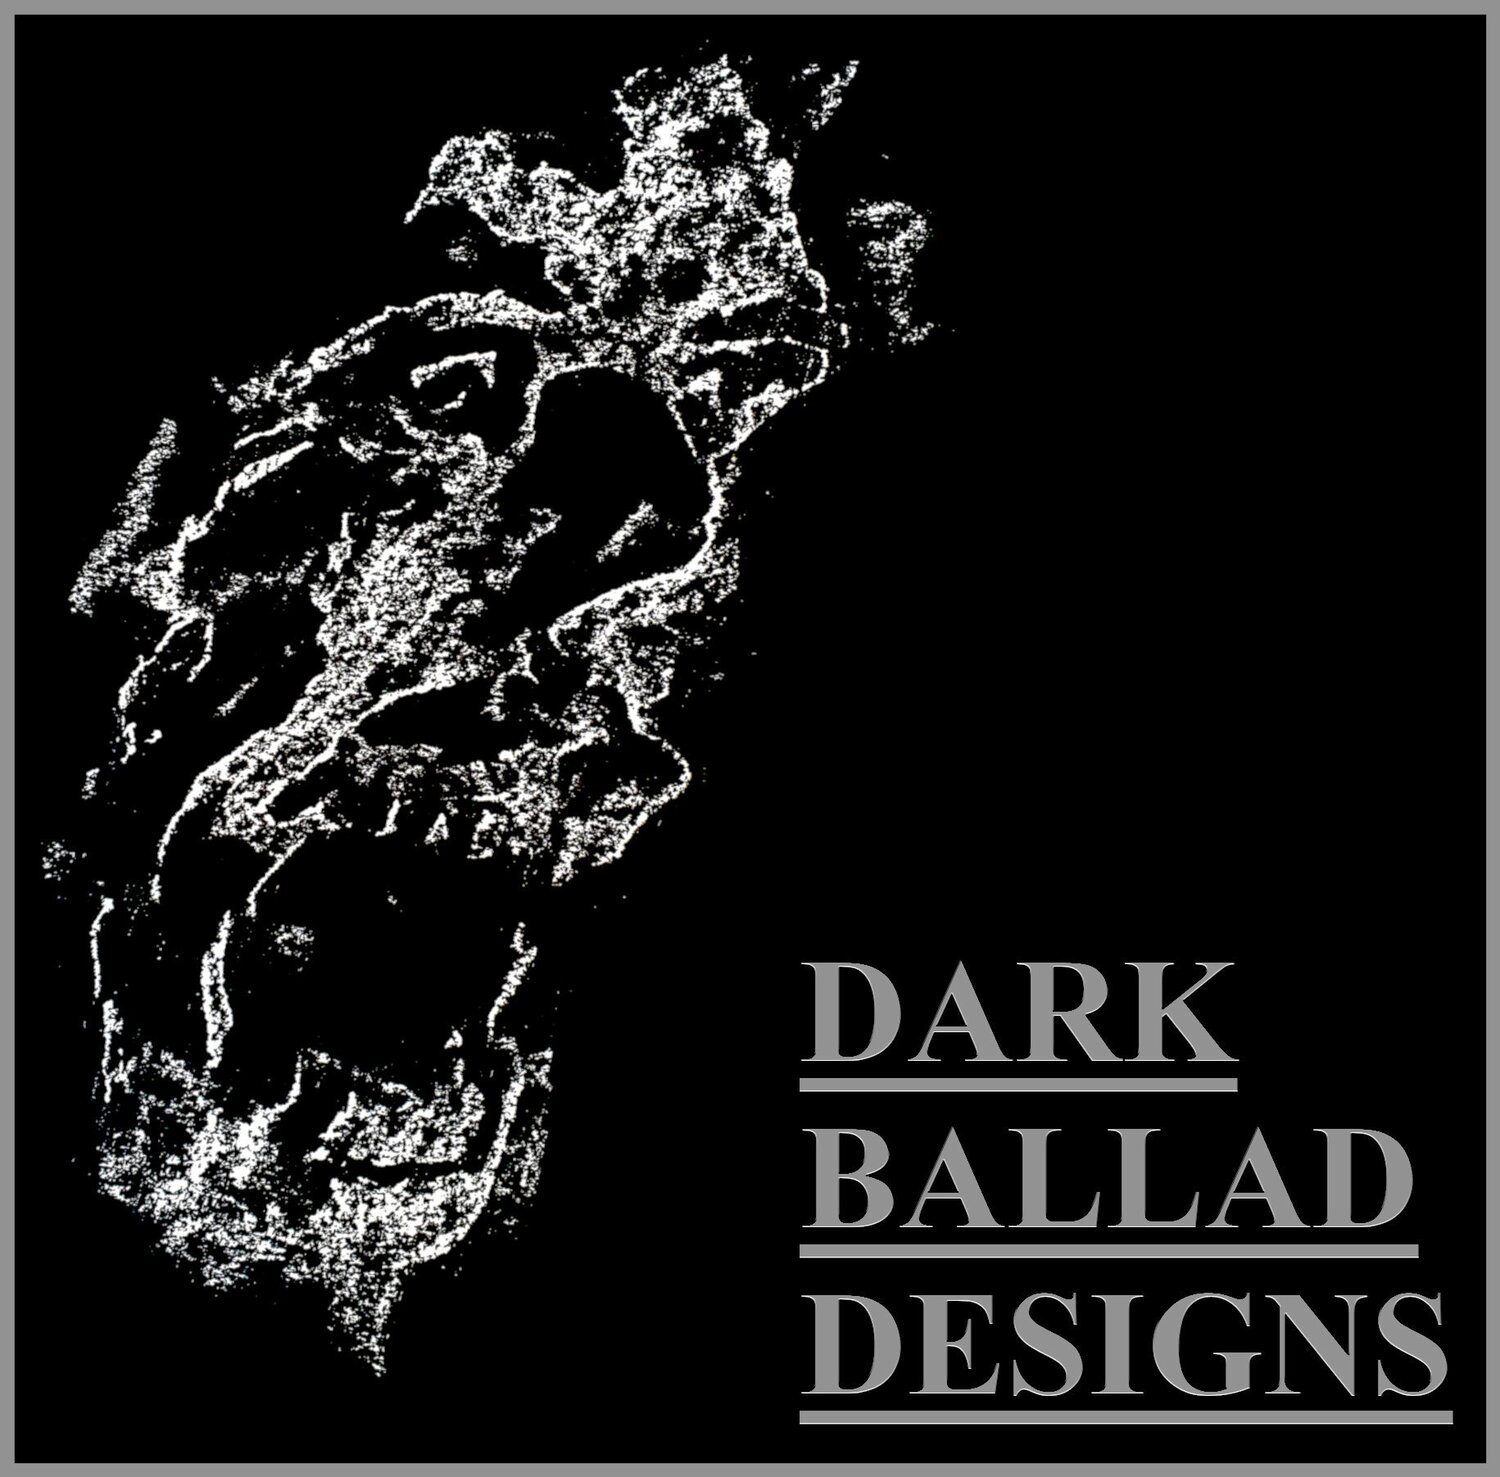 Dark Ballad Designs